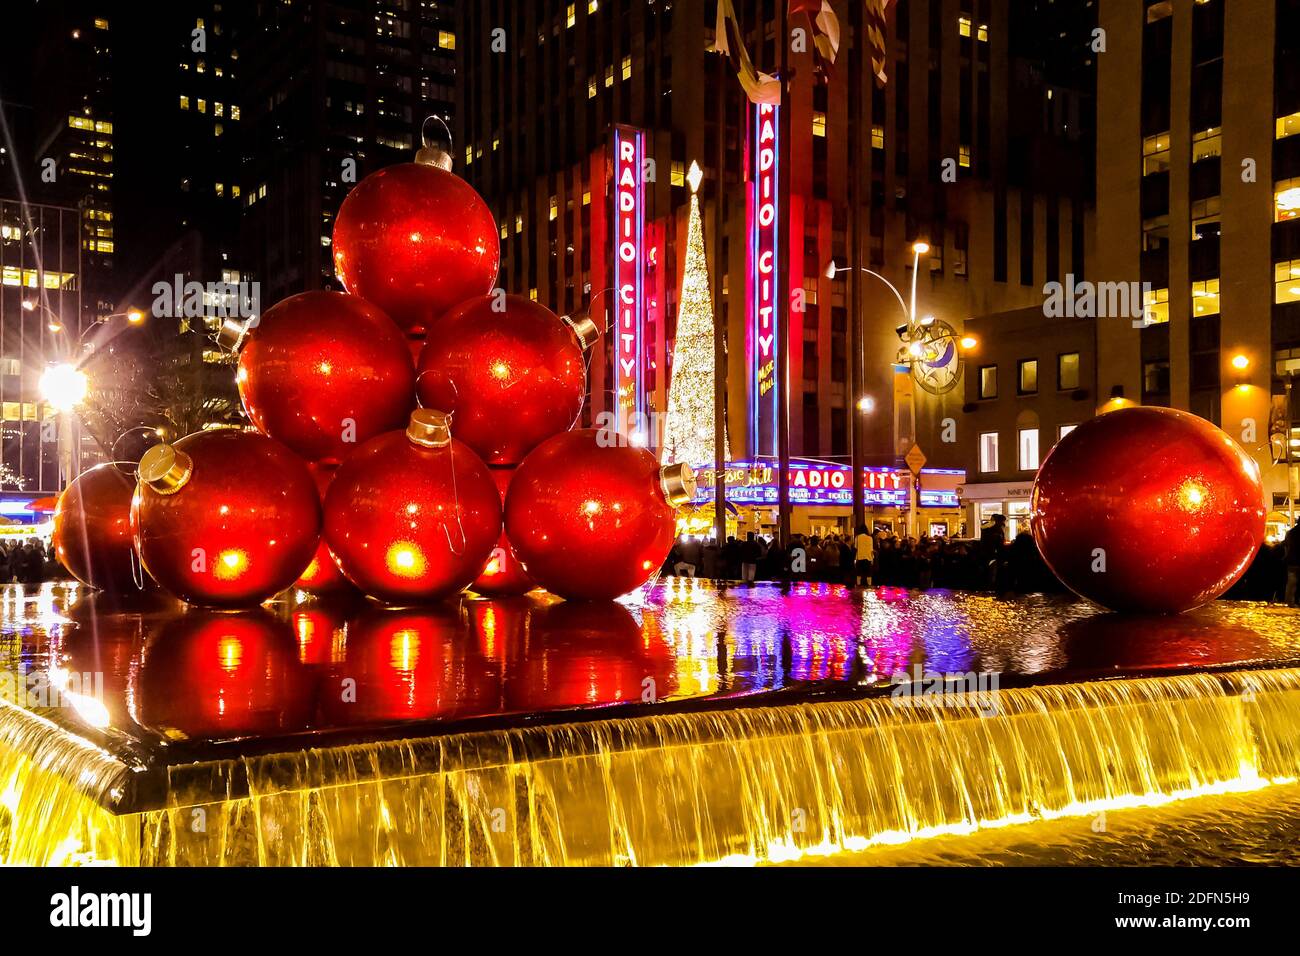 Khi bạn đến New York vào mùa lễ hội, bạn sẽ cảm thấy như đang đến một thế giới khác với các hoạt động, sự kiện đặc sắc cùng những món đồ trang trí lung linh, đa dạng. Hãy cùng chúng tôi khám phá những công trình trang trí đẹp mắt nhất của New York vào mùa Giáng sinh.